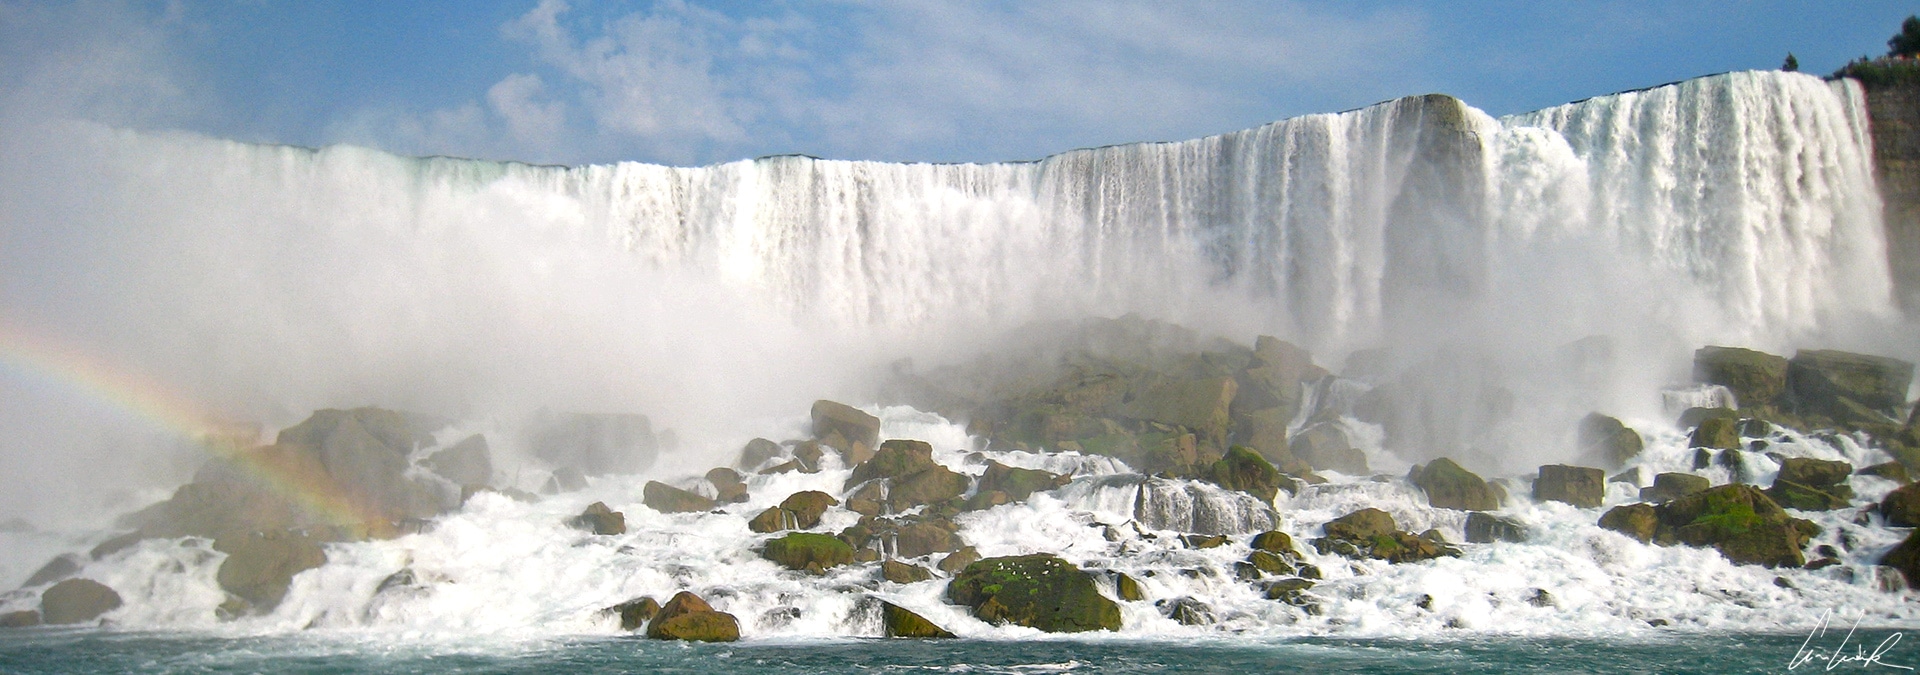 Les chutes du Niagara, merveille naturelle entre États-Unis et Canada